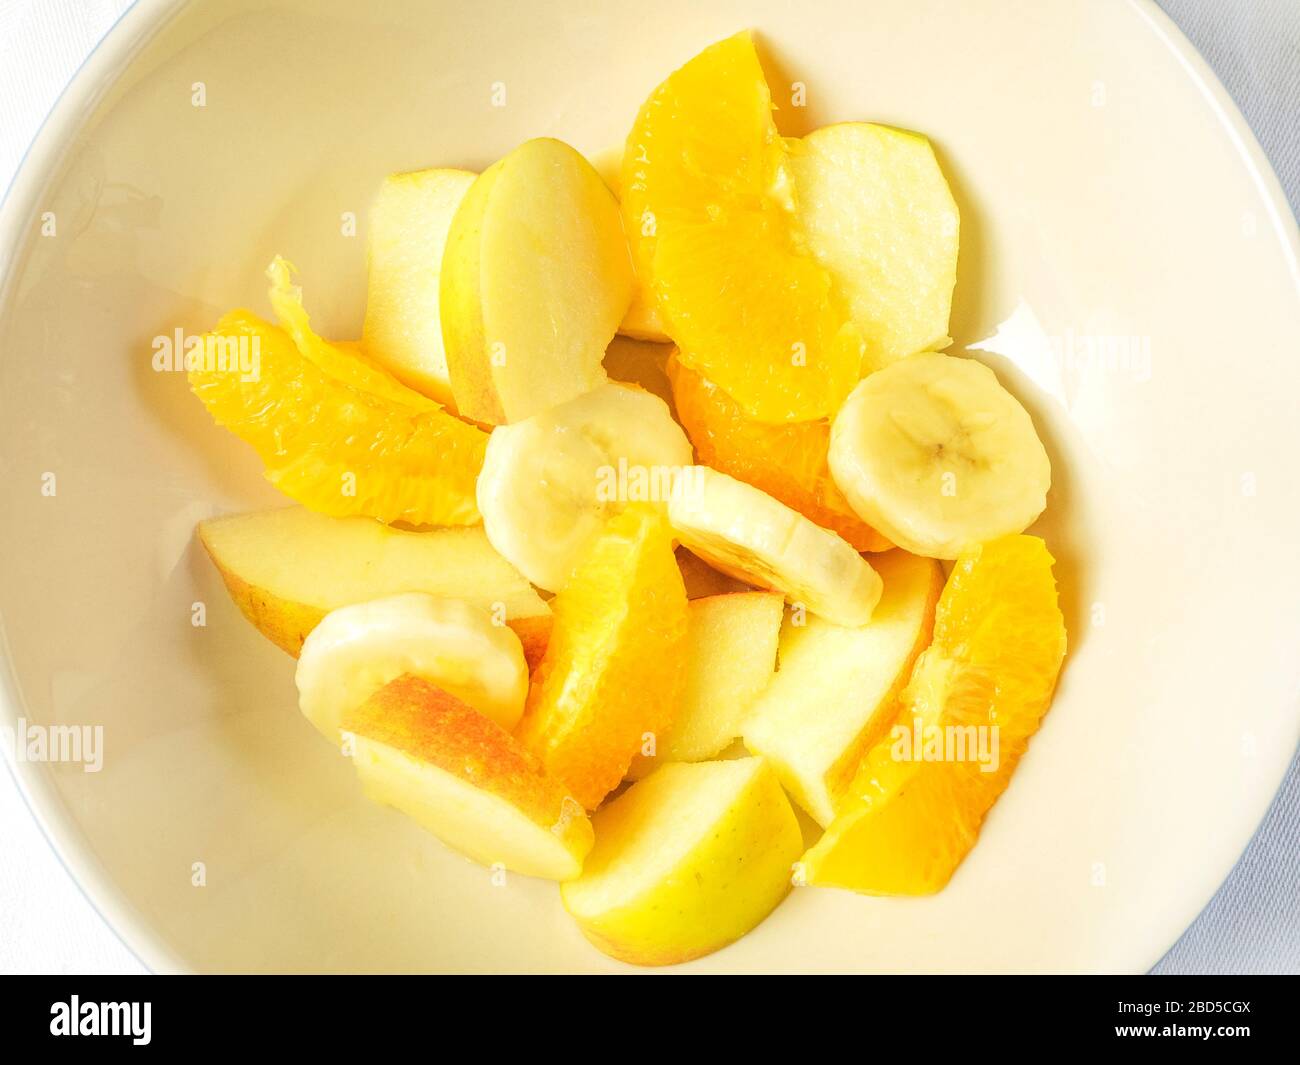 Eine Schüssel Obstsalat mit orangefarbenen Segmenten und geschnittenen Äpfeln und Bananen von oben auf einem weißen Tischtuch Stockfoto